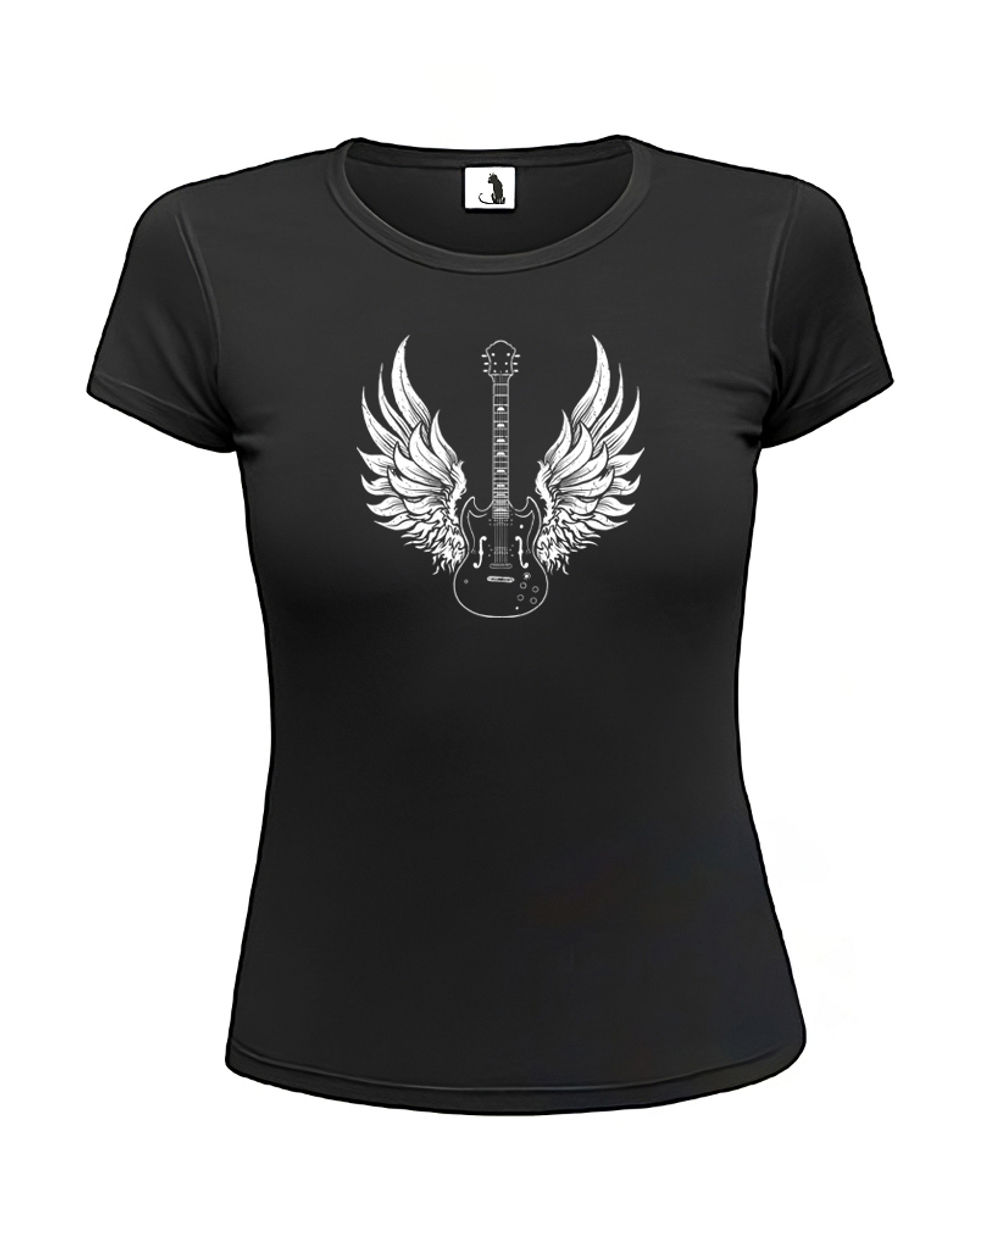 Футболка Гитара с крыльями женская приталенная черная с белым рисунком